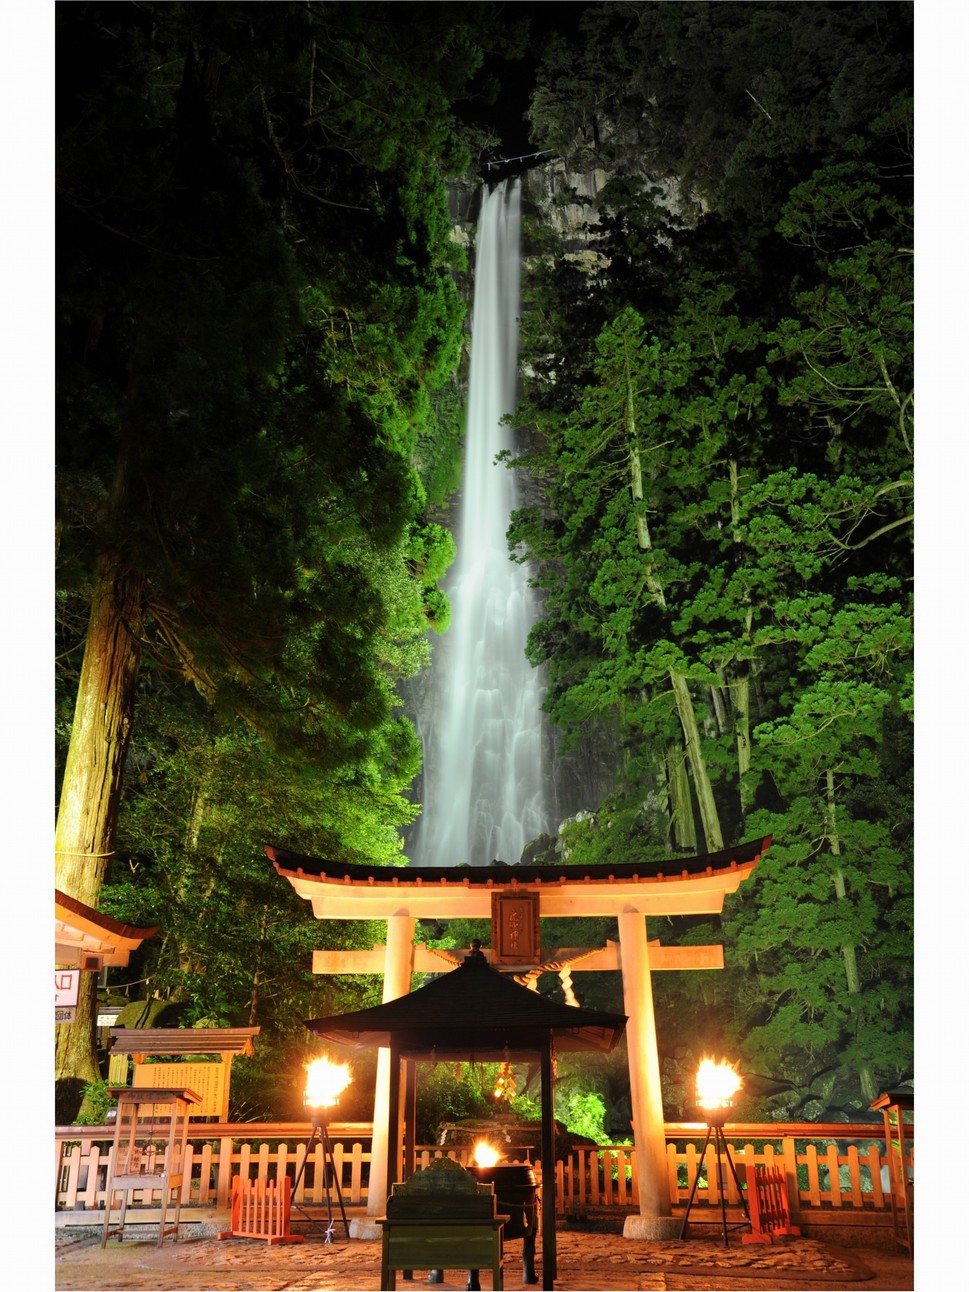 日本一の名瀑那智の滝ライトアップ